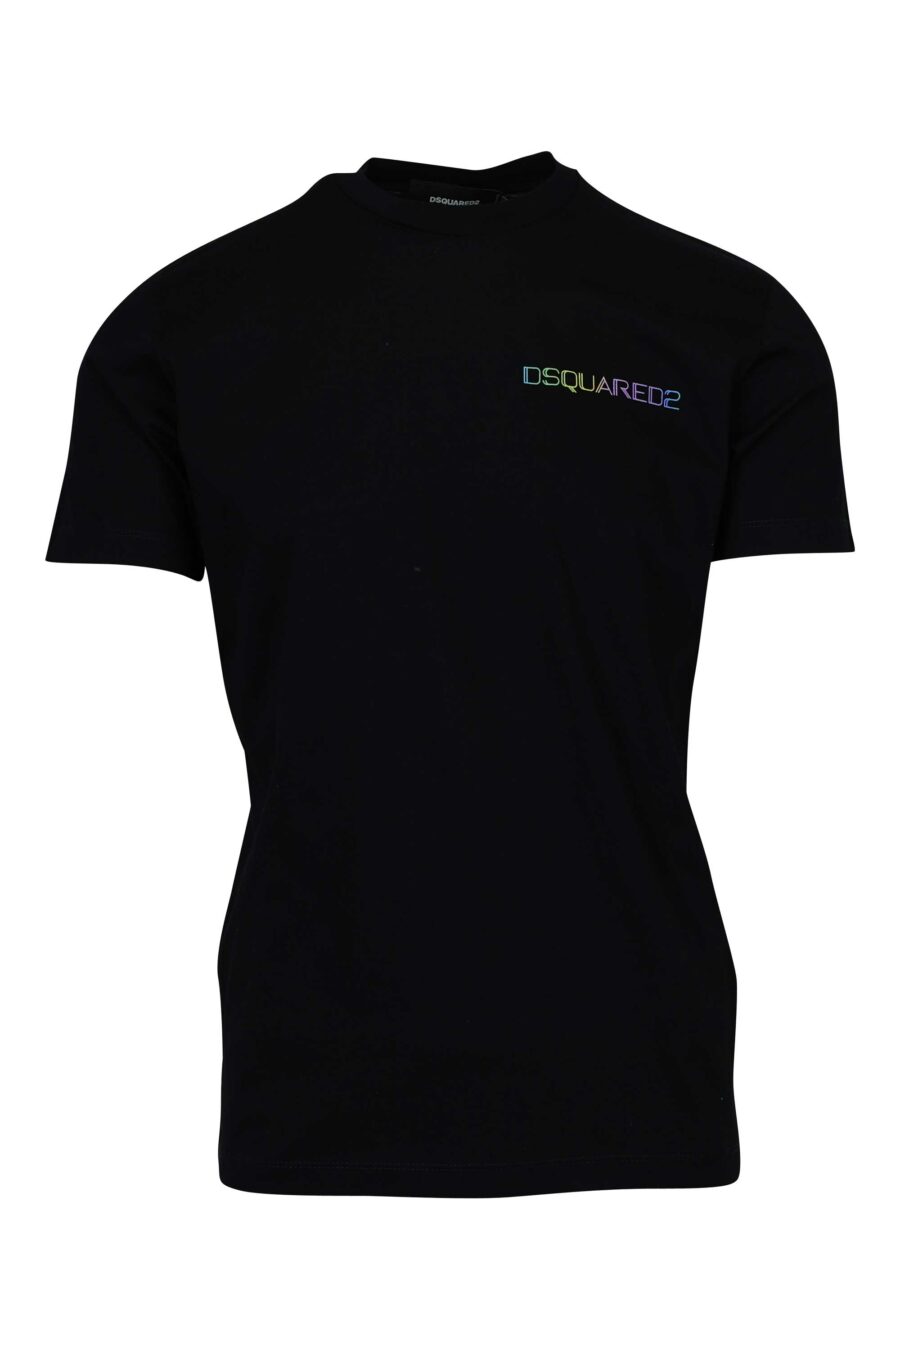 Schwarzes T-Shirt mit mehrfarbigem Mini-Logo an der Seite - 8054148447649